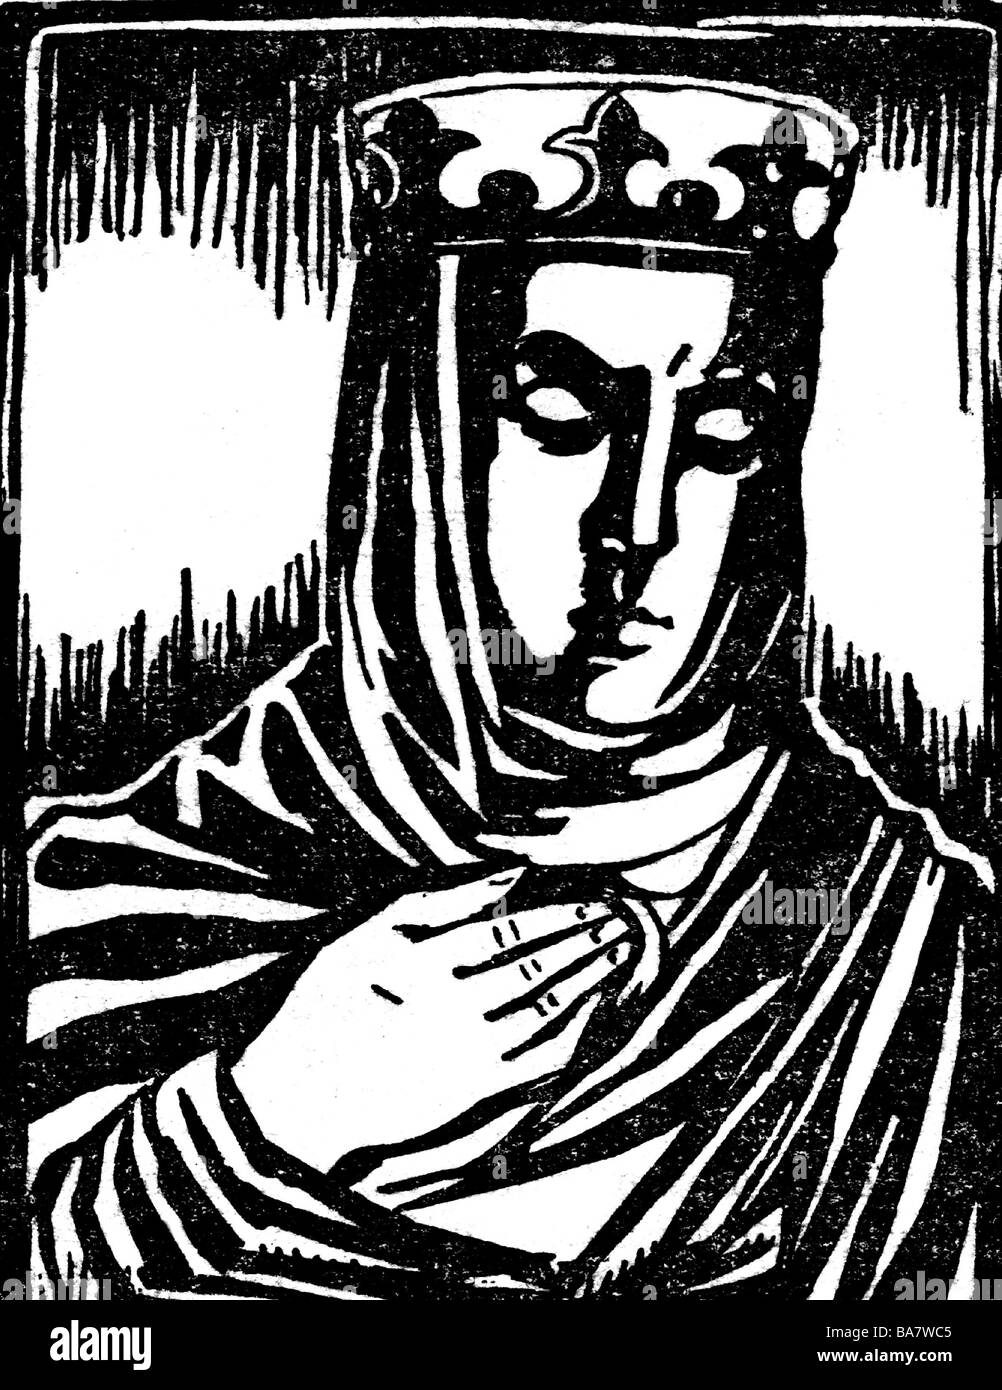 Adelaide d'Italia, 931 - 999, tedesco e italiano Regina, imperatrice romana, moglie di Ottone I "grandi" poiché 951, ritratto, xilografia, Foto Stock